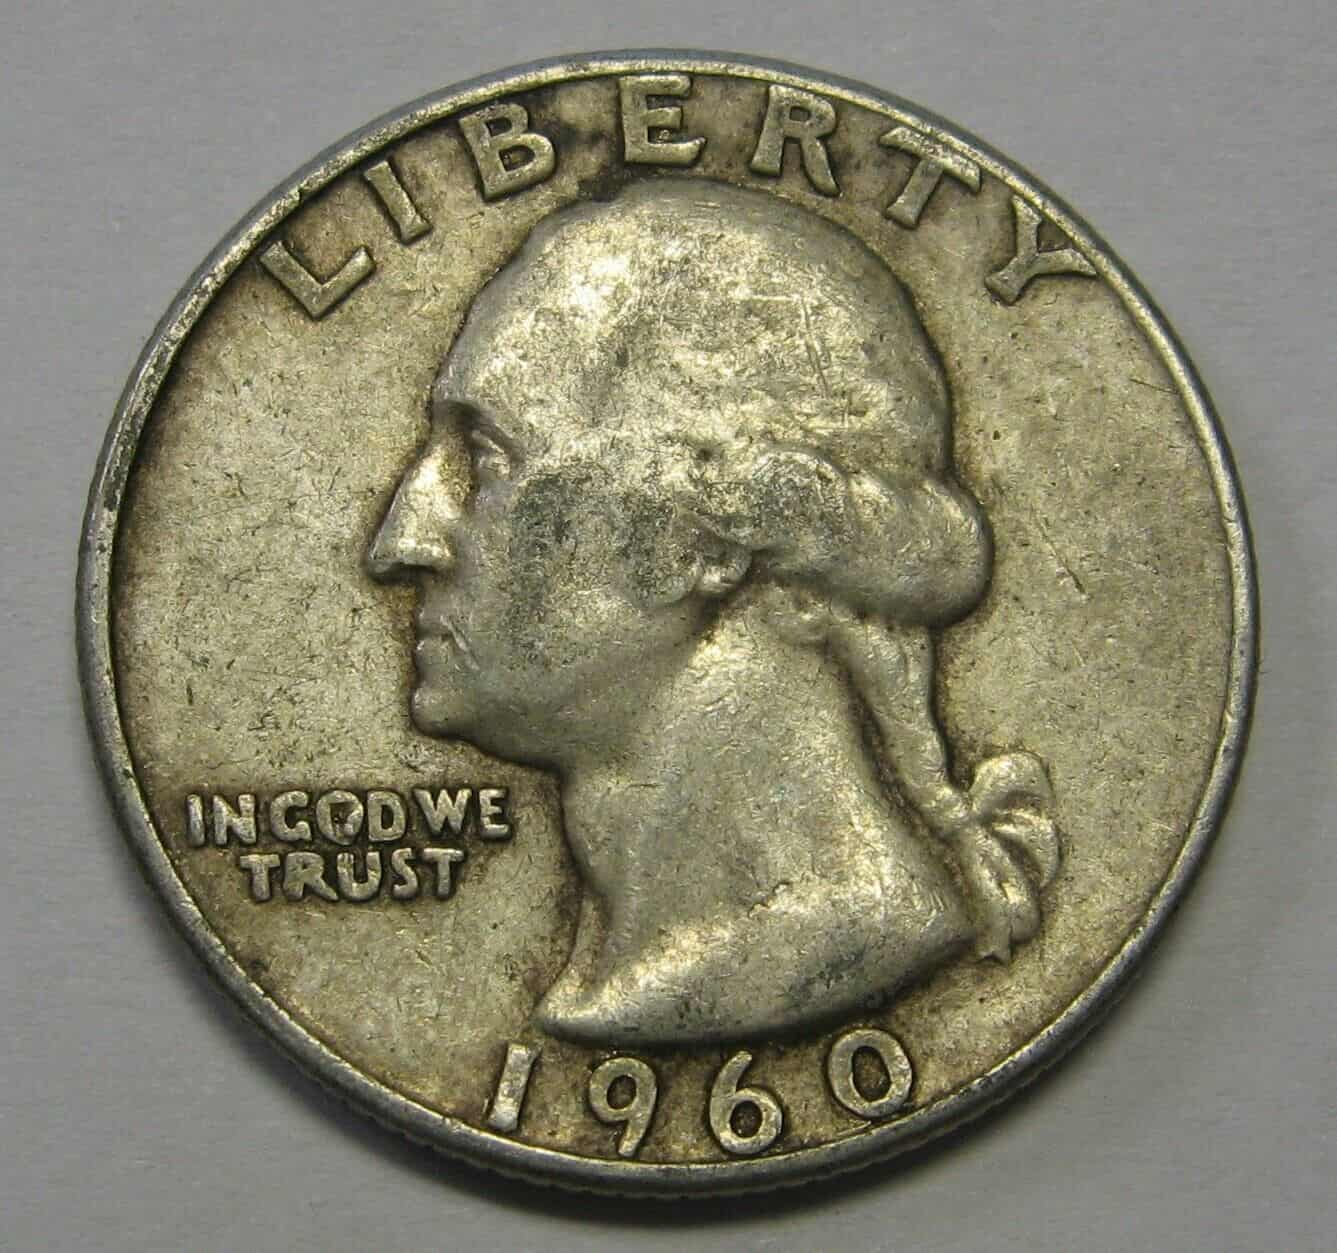 1960 Quarter Value